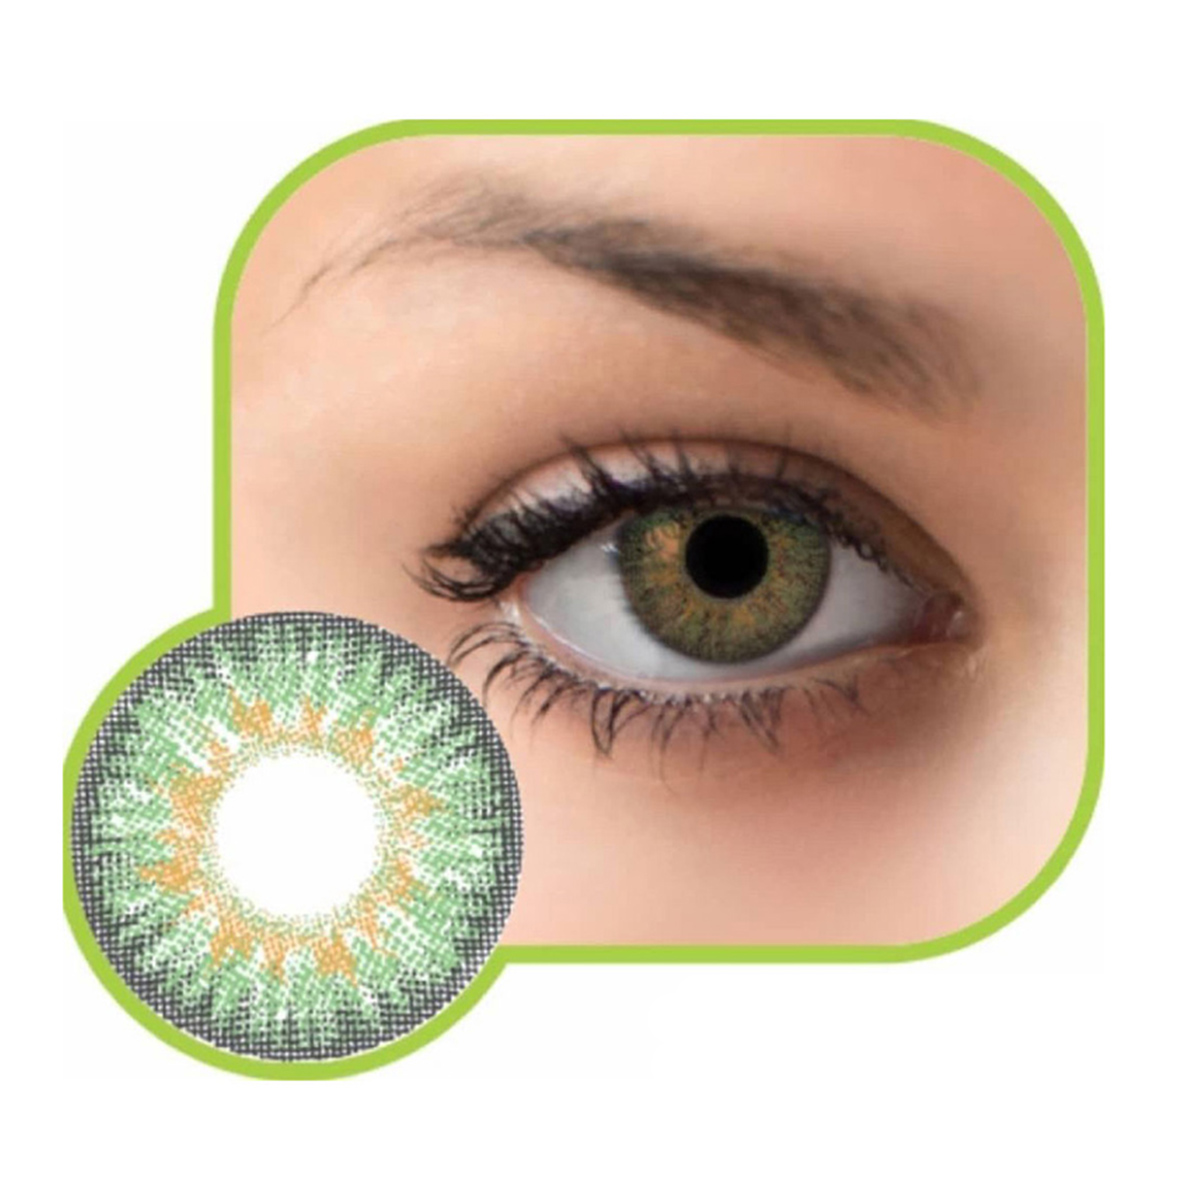 لنز تماسی رنگی چشم~Eye Contact Color Lens~GLAMOUR